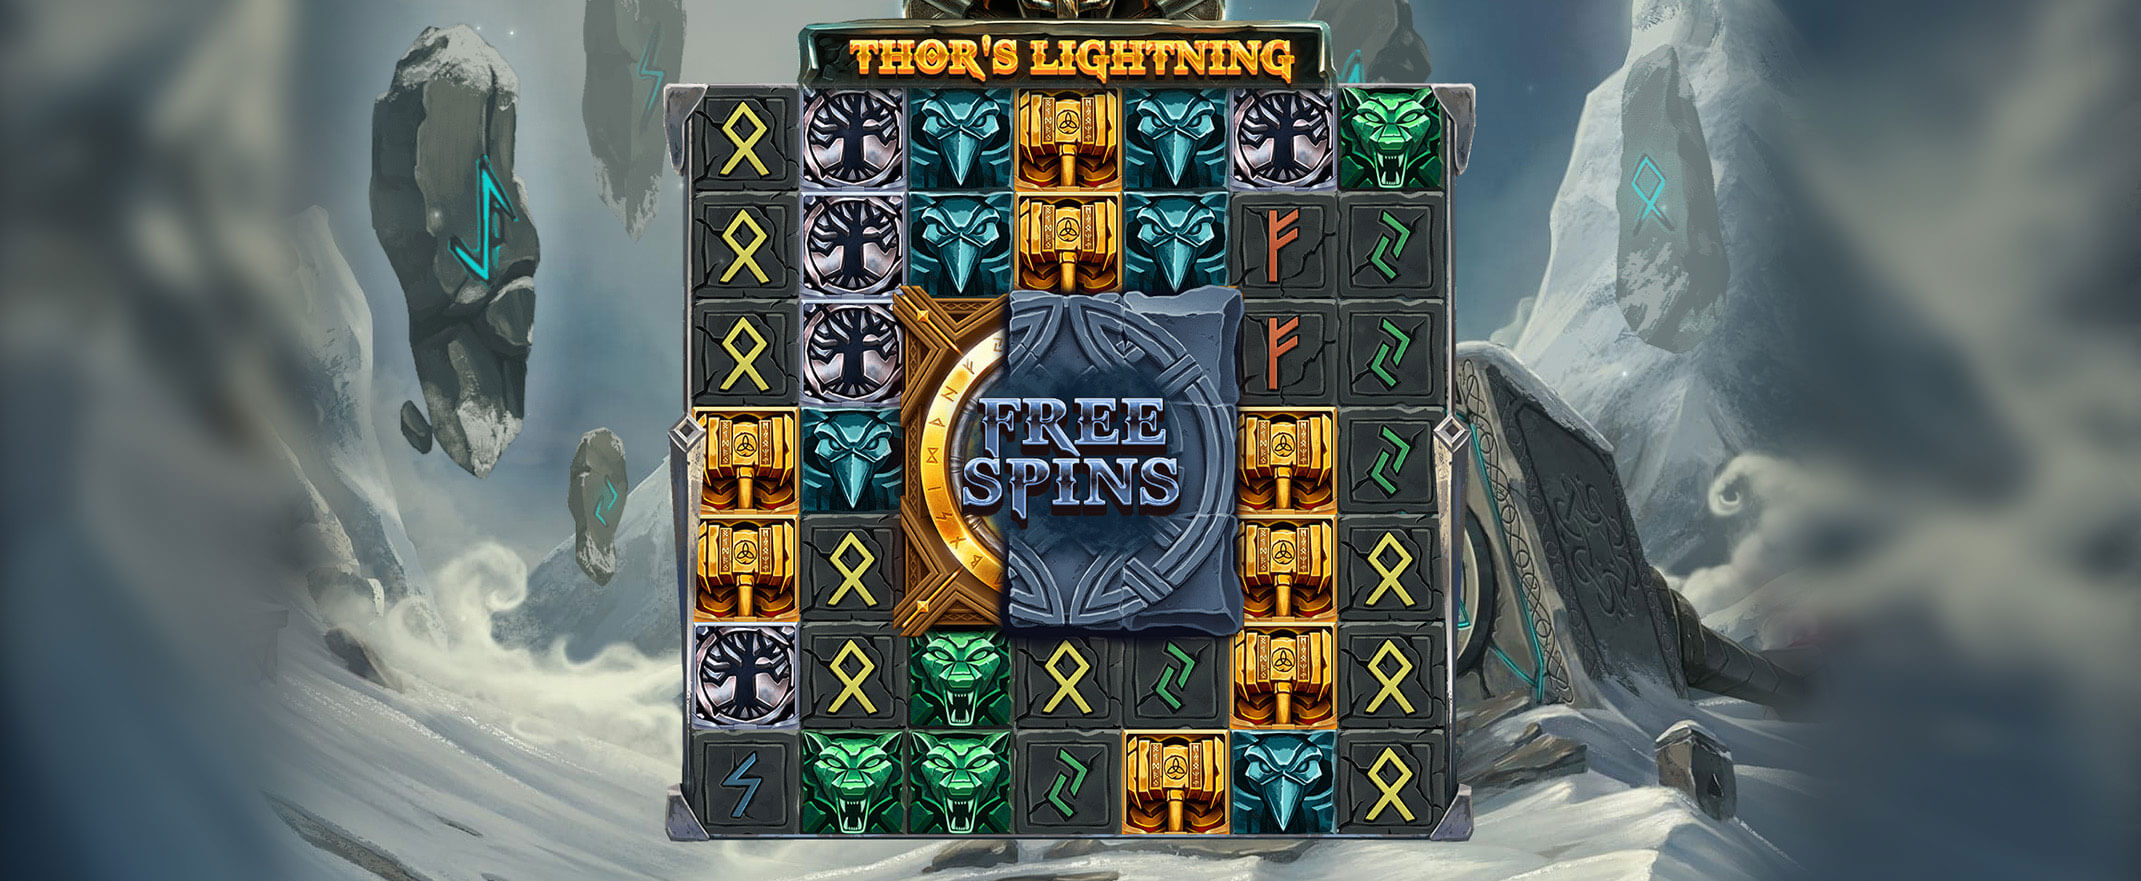 Thor's Lightning Spielautomat von Red Tiger